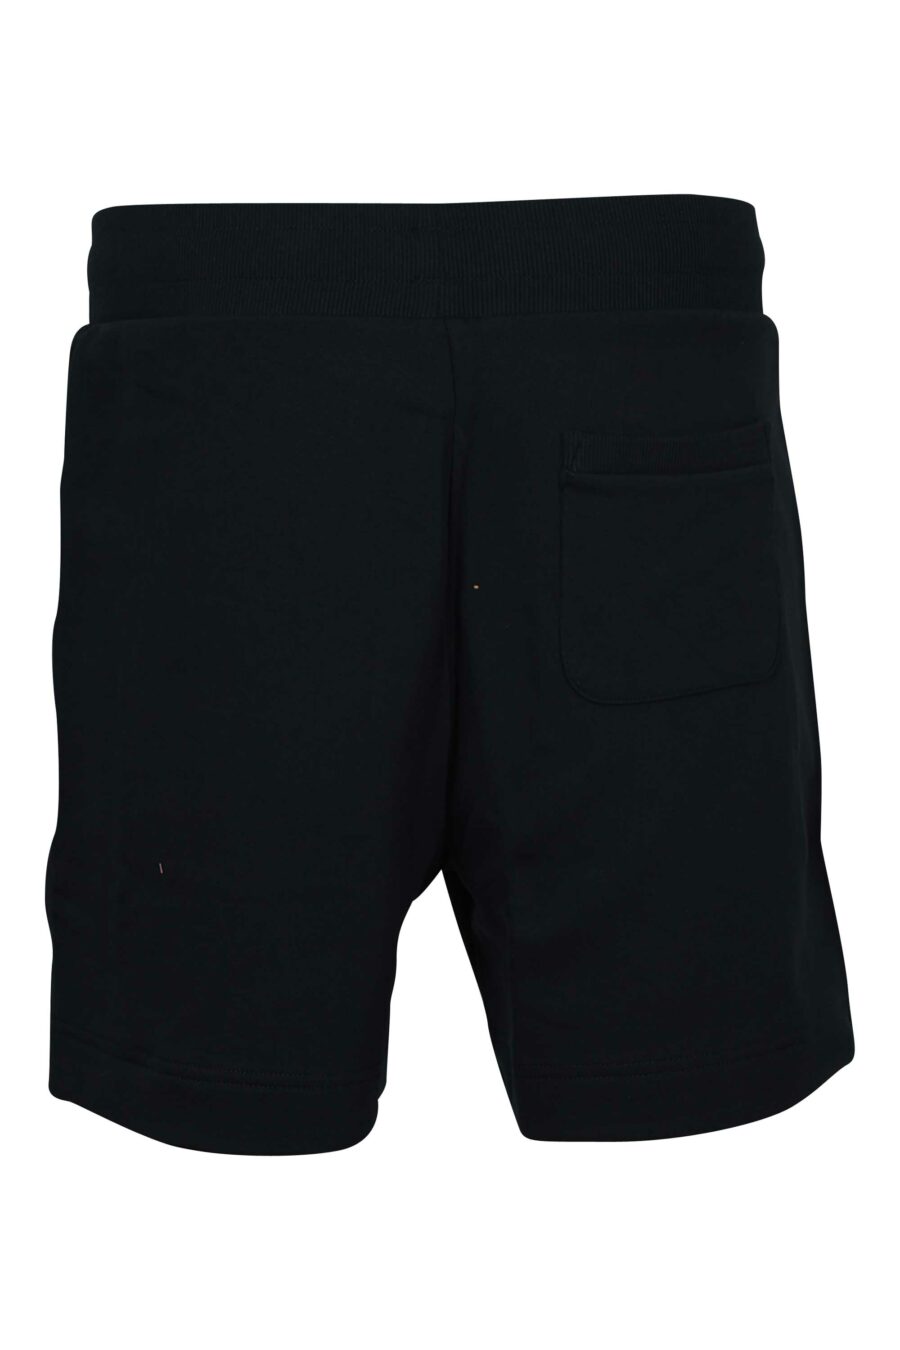 Pantalón de chándal negro corto con logo monocromático de goma lateral - 667113684482 1